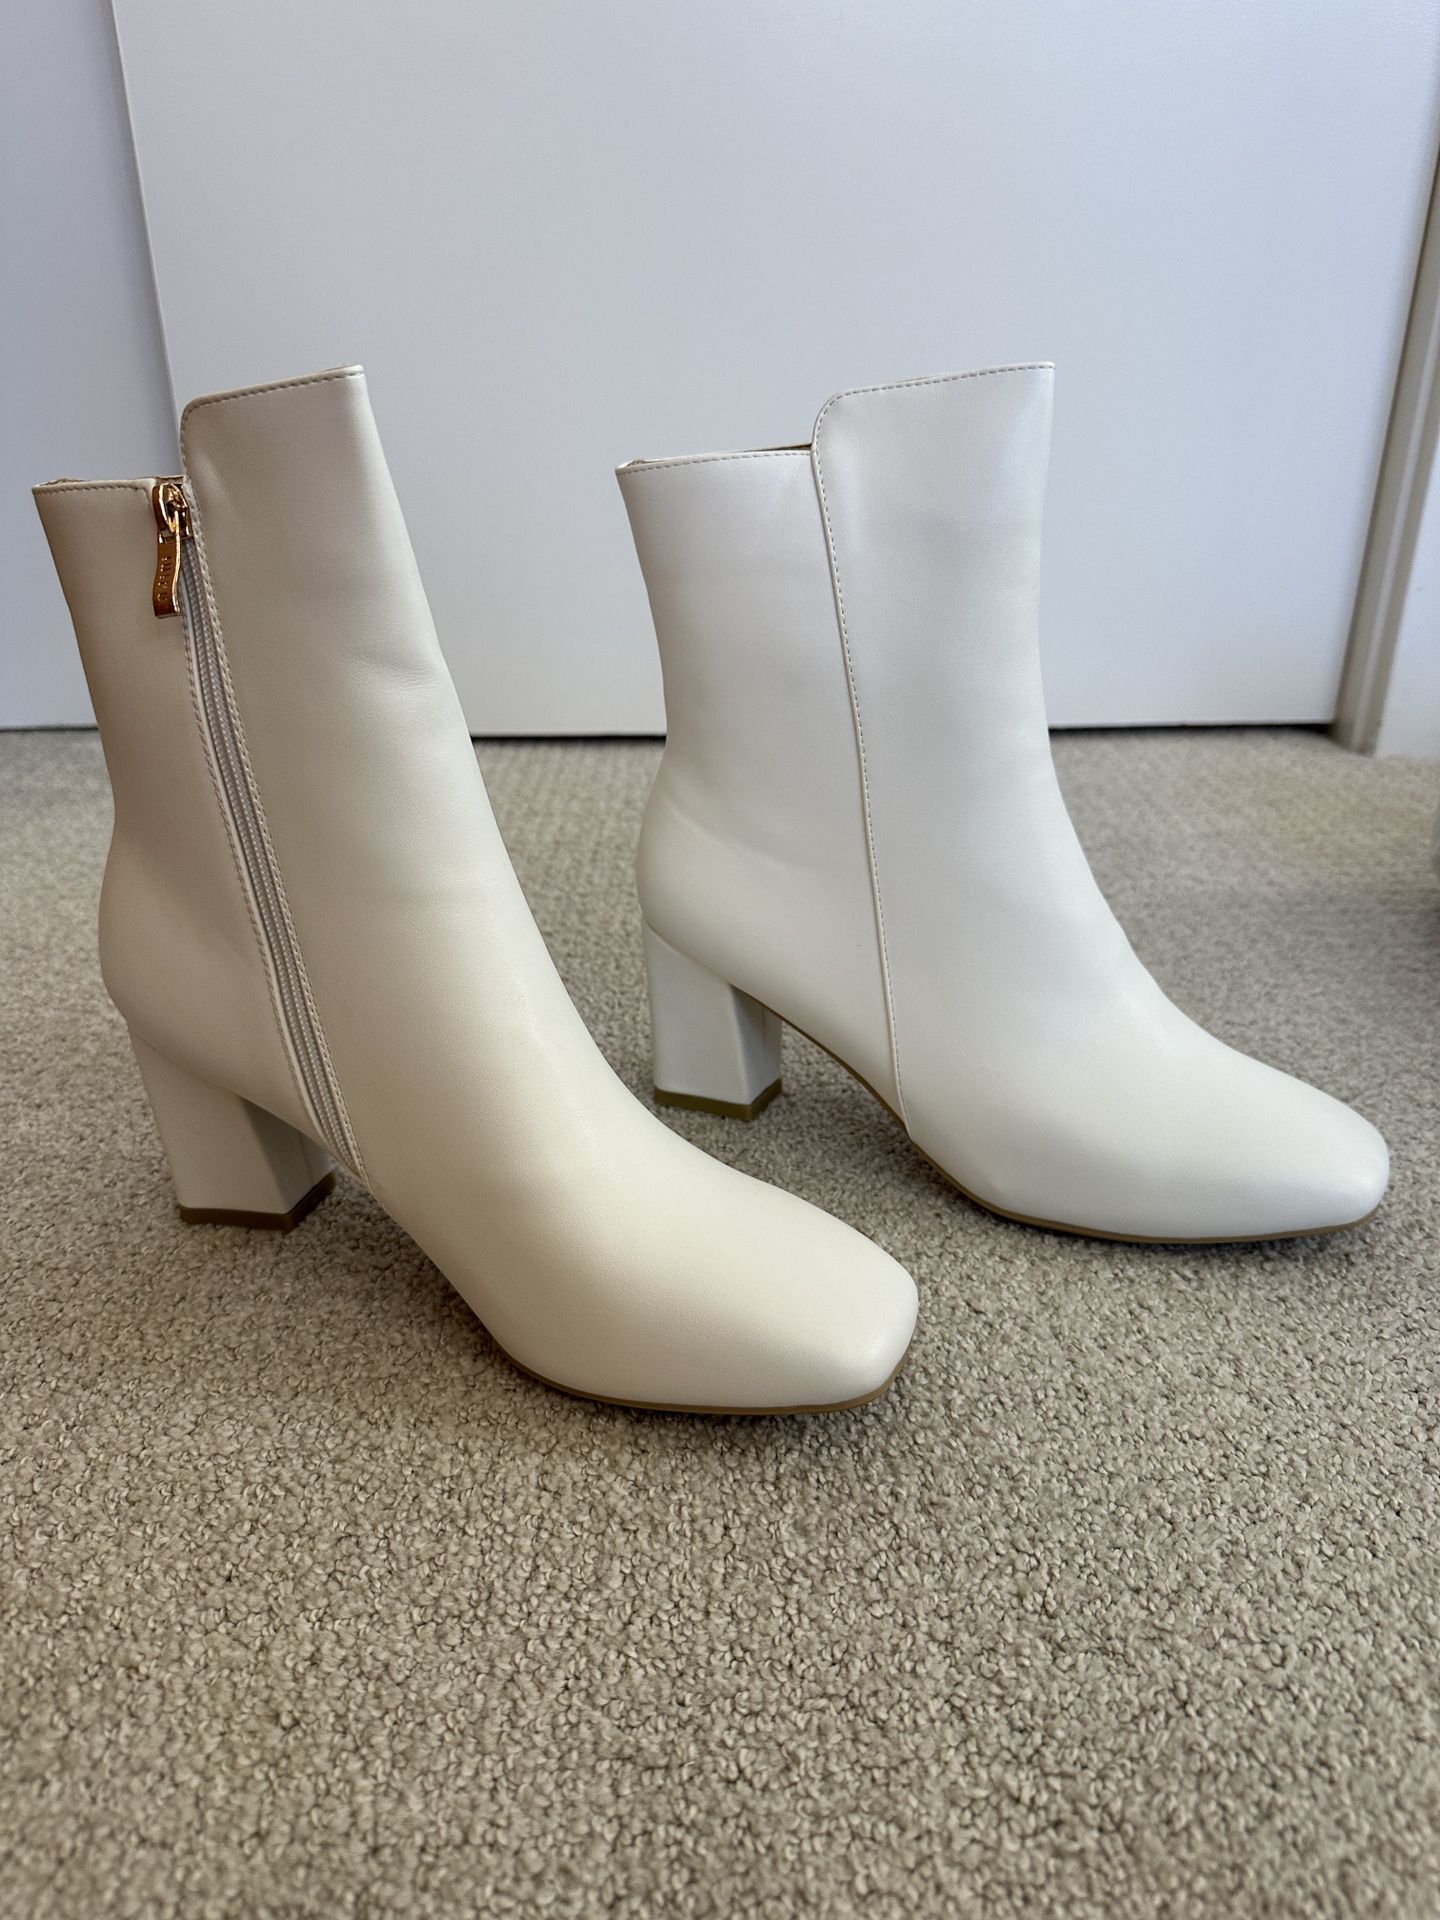 IDIFU Women's Ada Fashion Square Toe Ankle Boots Size 9.5